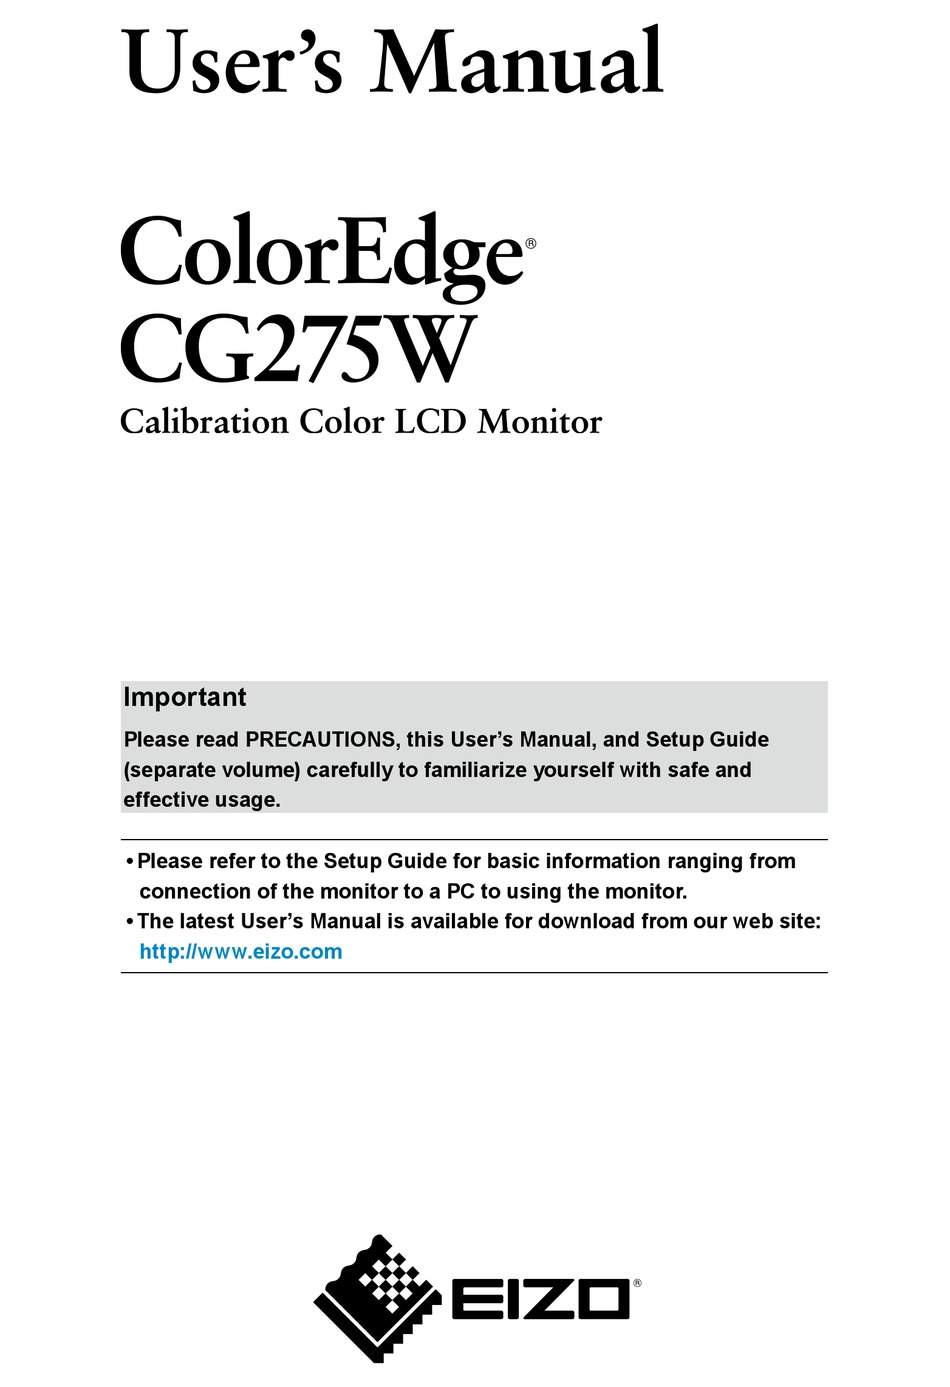 Eizo coloredge cg275w monitor firmware 1.0002 for mac